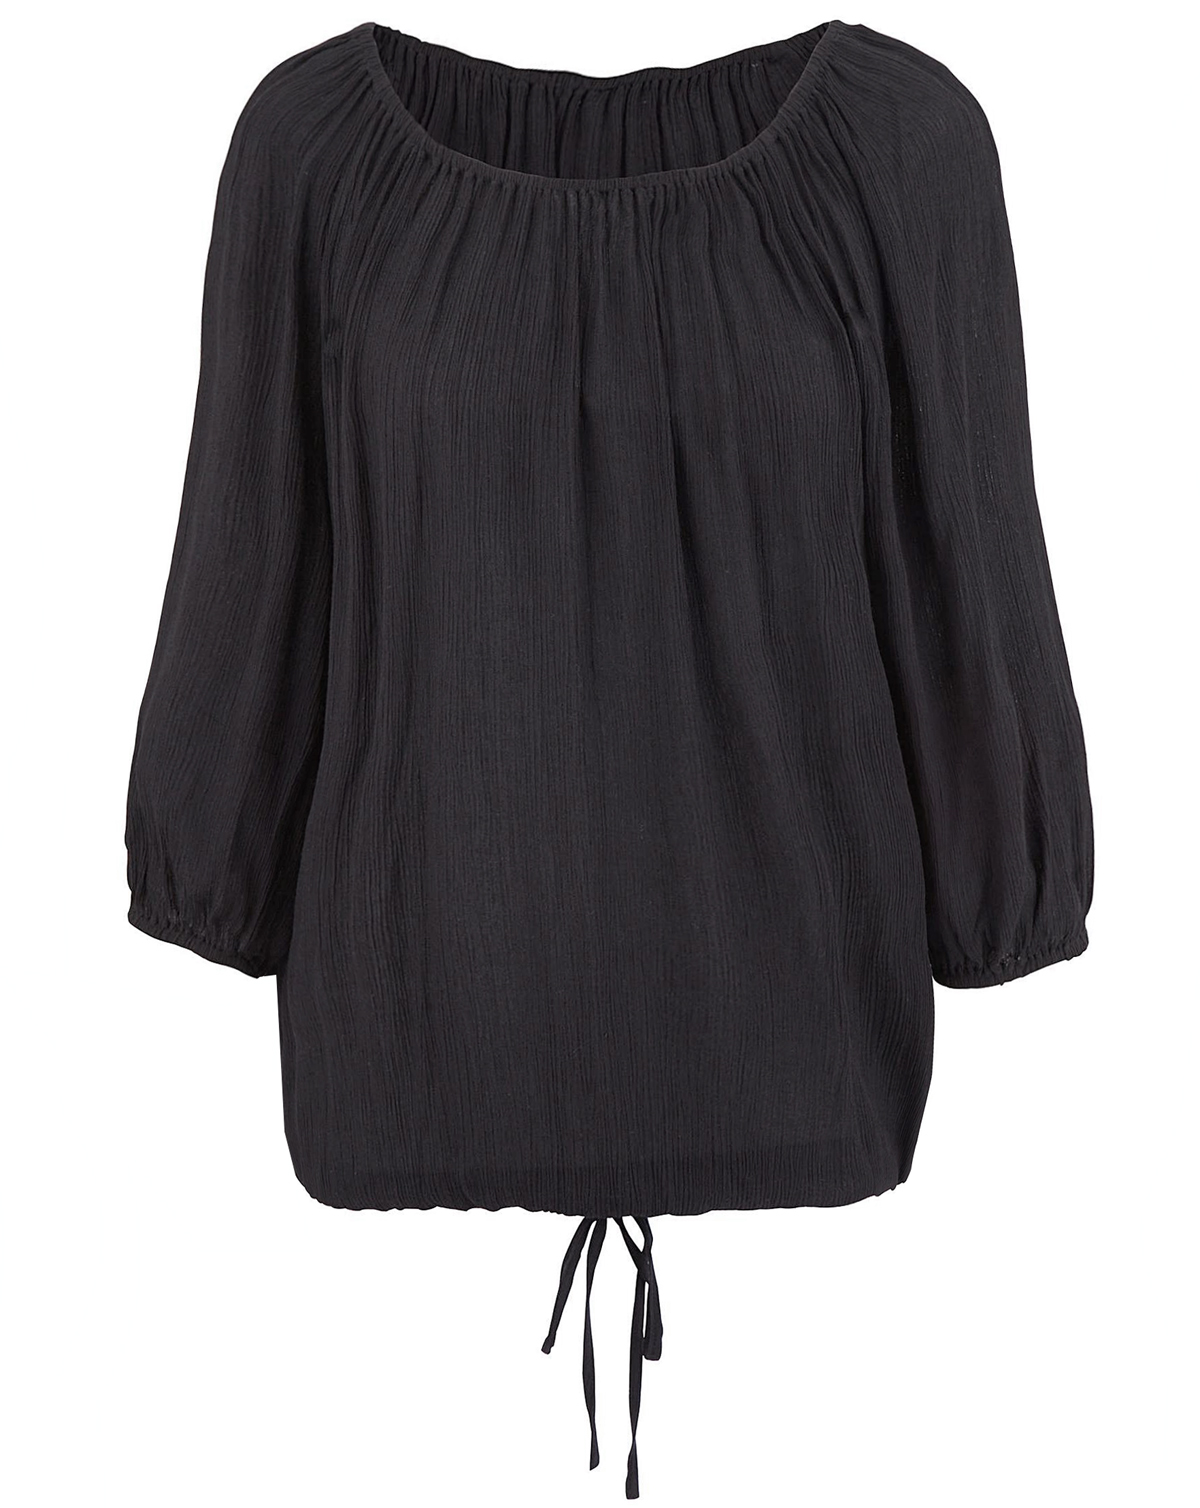 Wholesale Plus Size Clothing from Marisota - - Anthology BLACK Plain ...